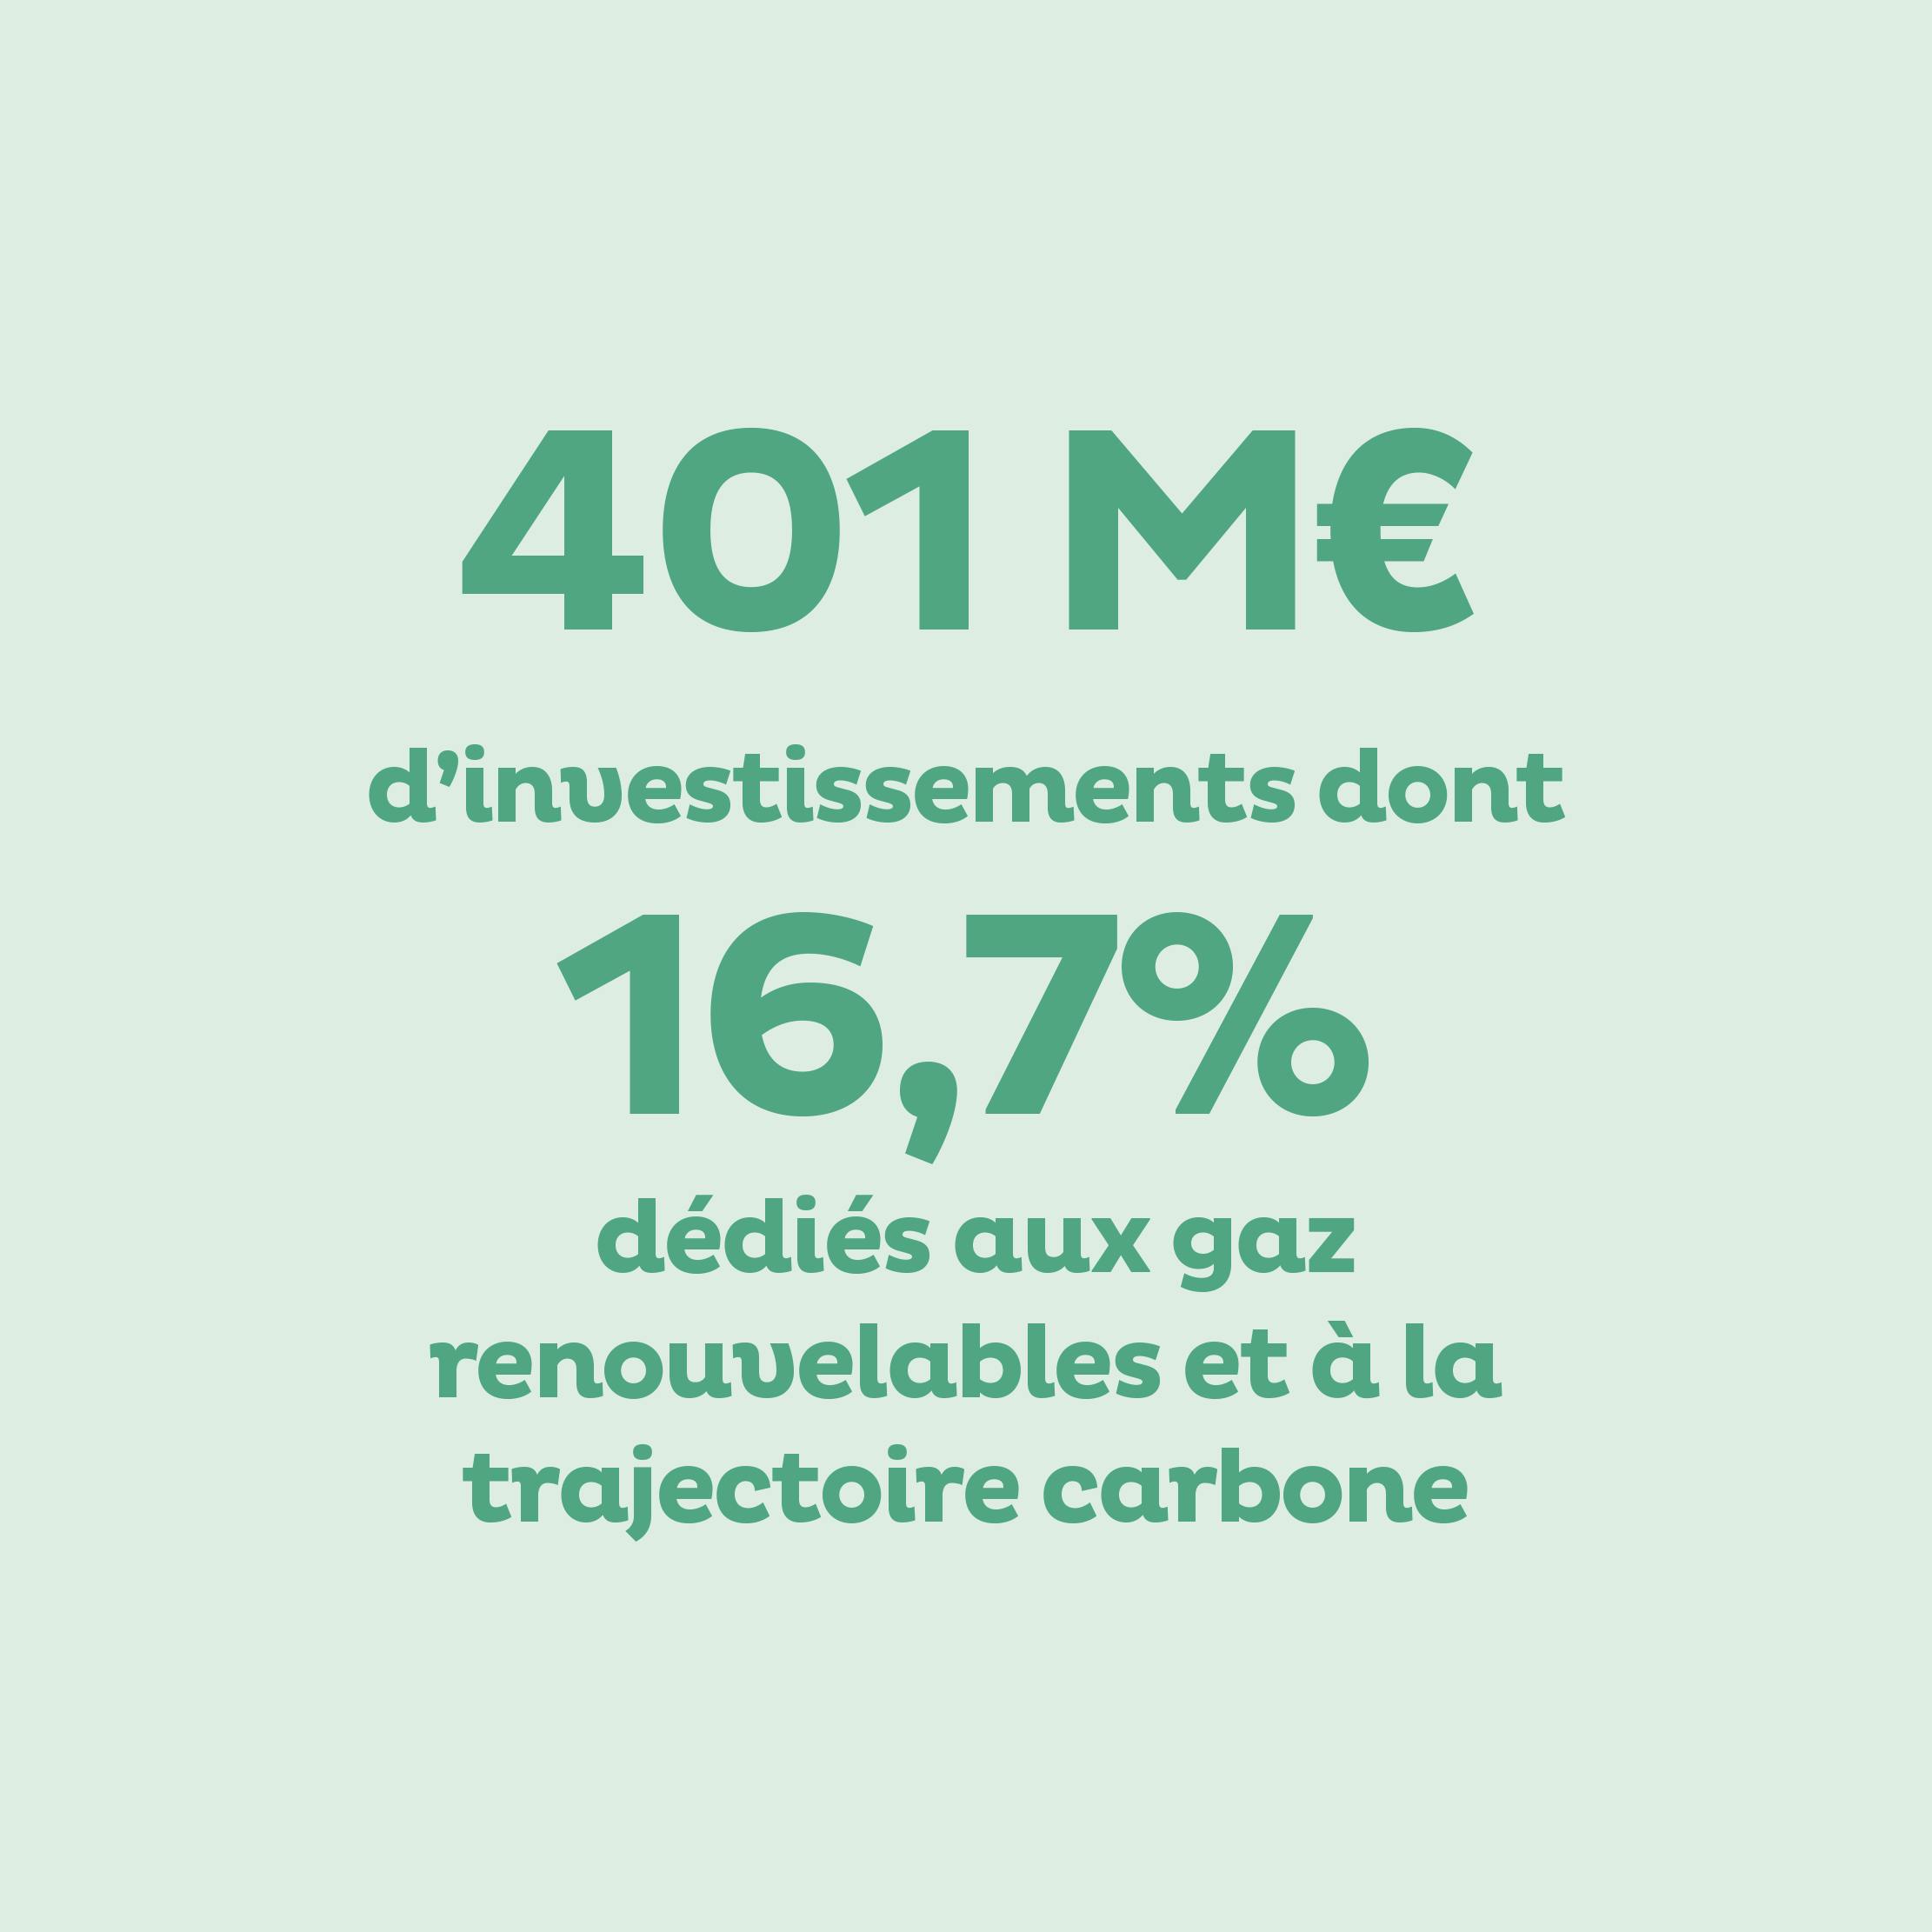 Investissements 401 M€ dont 16,7% gaz renouvelable et trajectoire carbone